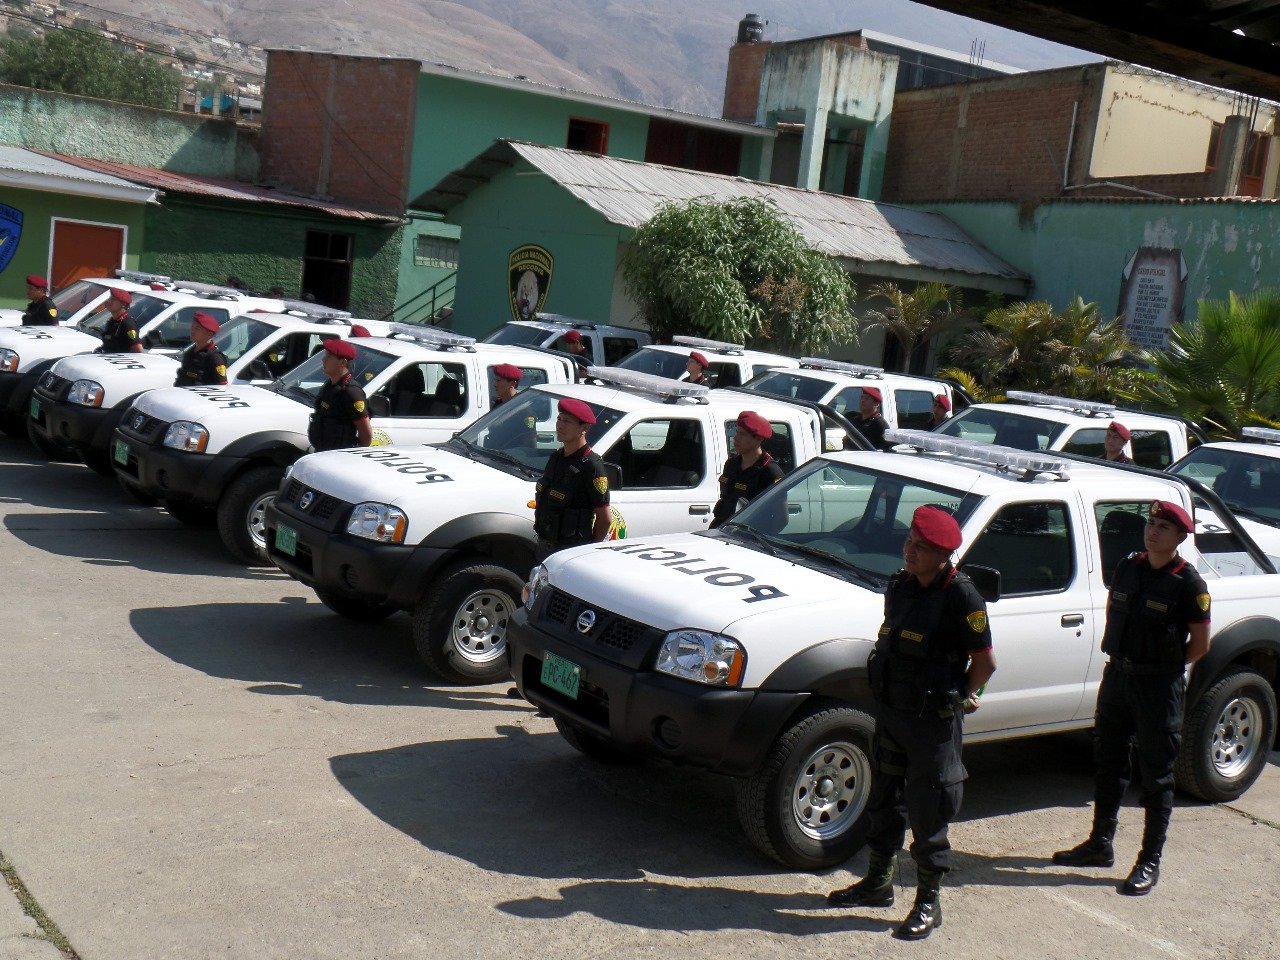 Gorehco inicia procesos de compra de 23 camionetas y 55 motocicletas para patrullaje policial